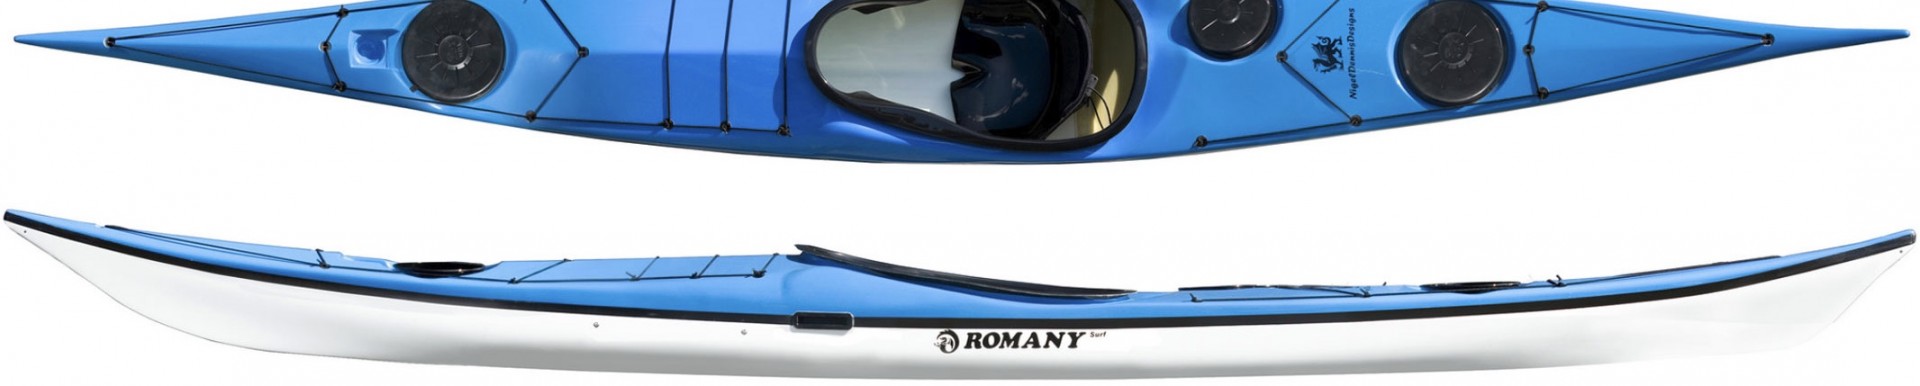 Romany Surf NDK sea kayak